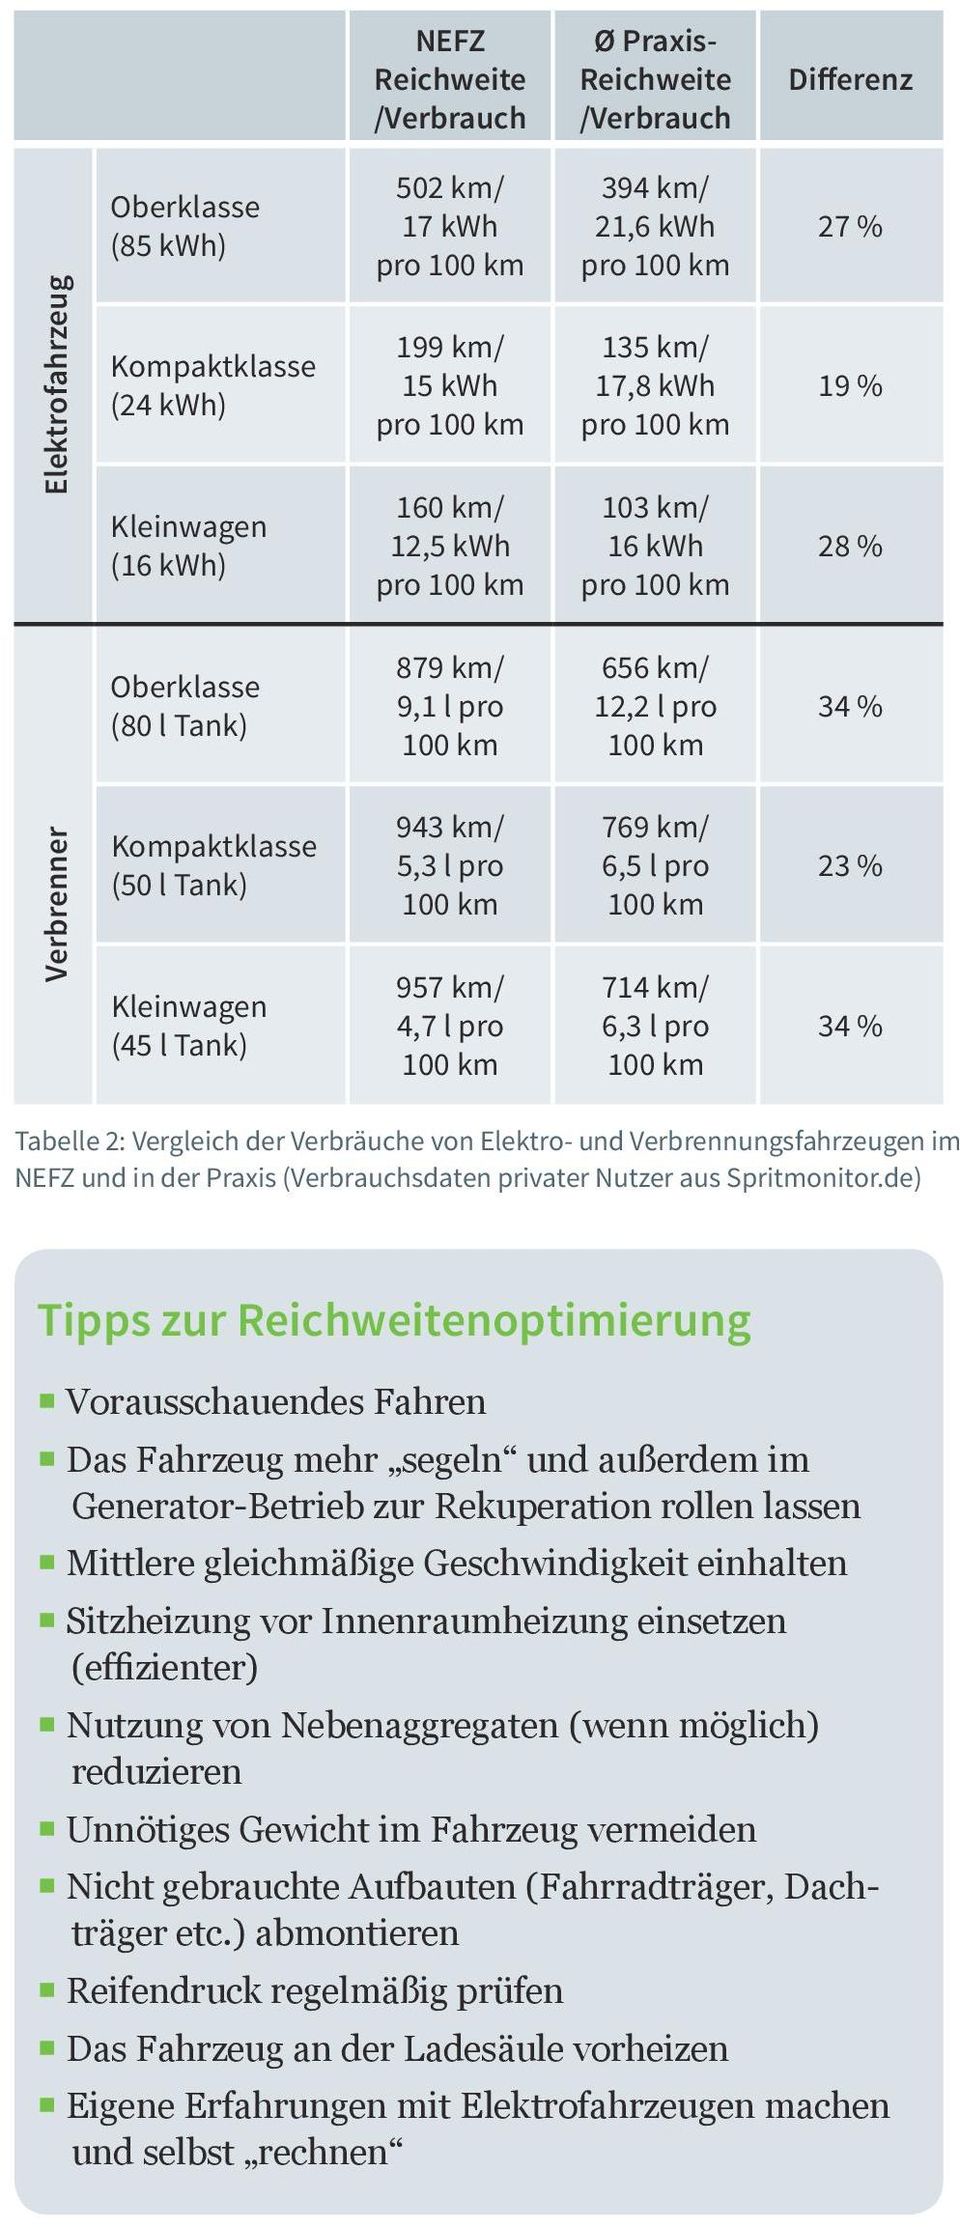 (45 l Tank) 943 km/ 5,3 l pro 957 km/ 4,7 l pro 769 km/ 6,5 l pro 714 km/ 6,3 l pro 23 % 34 % Tabelle 2: Vergleich der Verbräuche von Elektro- und Verbrennungsfahrzeugen im NEFZ und in der Praxis